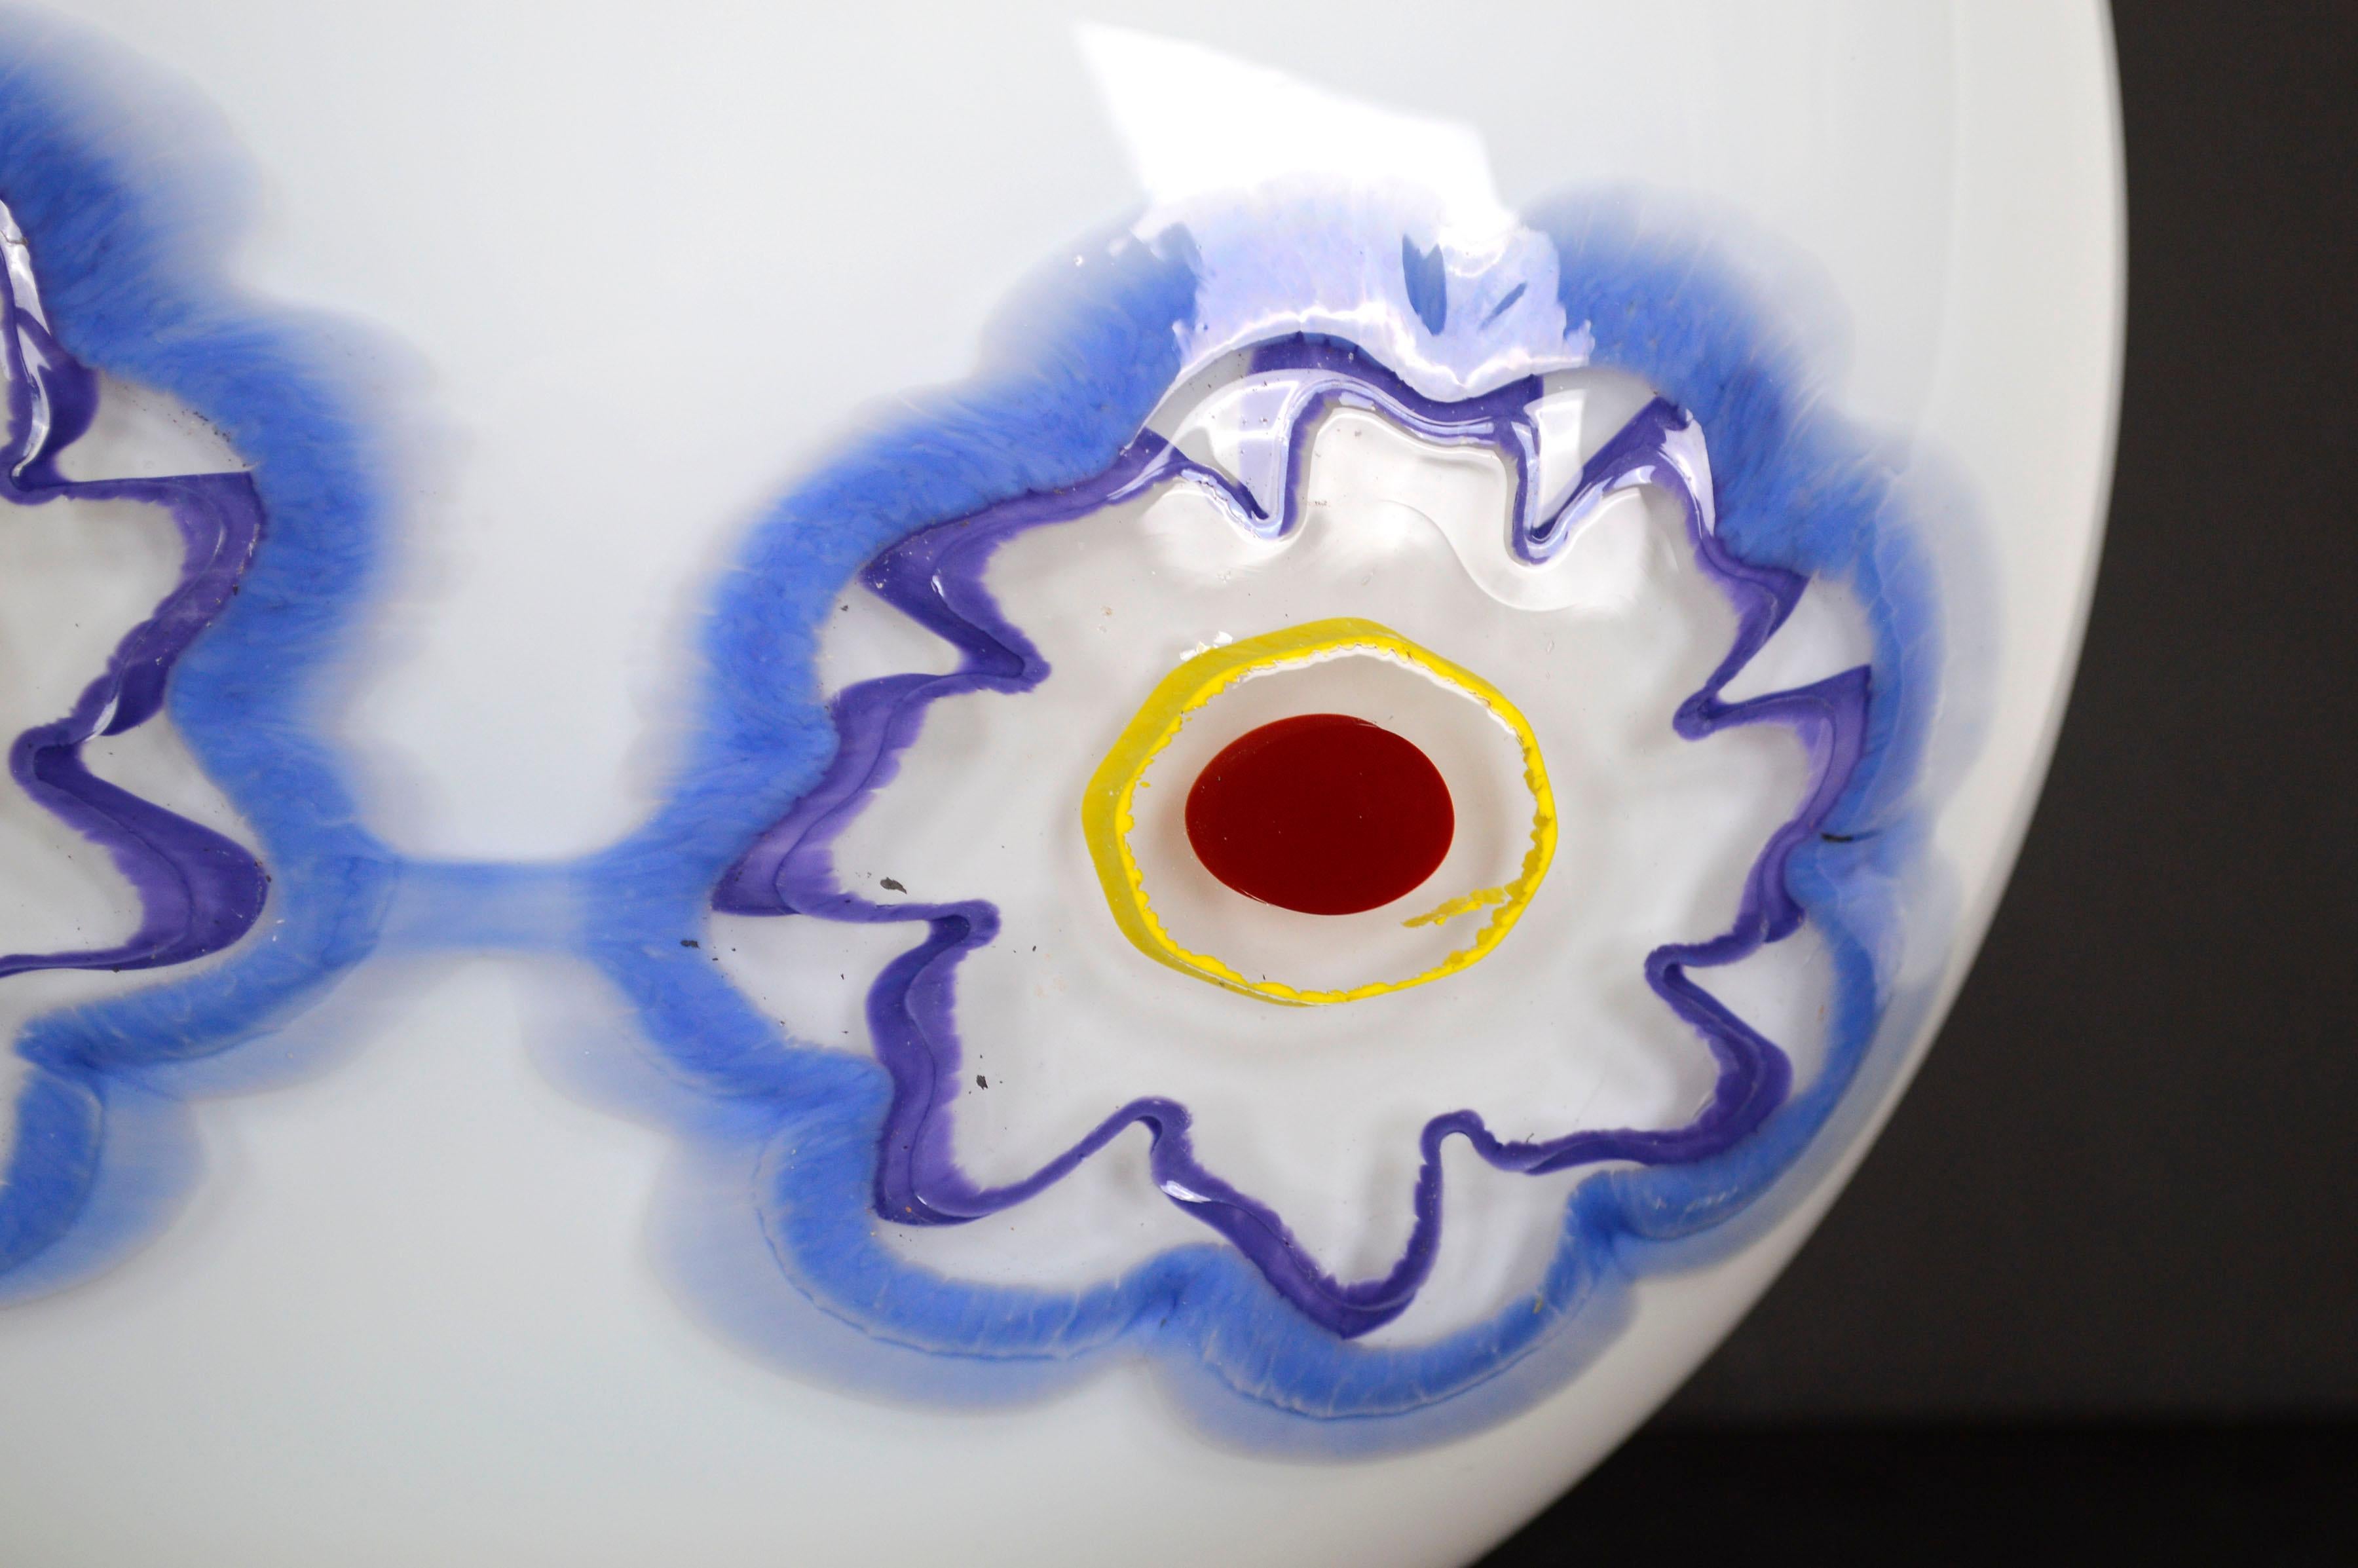 Wunderbar moderne Vase aus weißem mundgeblasenem Glas mit zwei blauen Blumen und rotem Rand von Nadine Saylor (Amerikanerin, 20. Jahrhundert), 2005. Signiert und datiert am Boden. Zustand: Ausgezeichnet. Maße: 9,5 